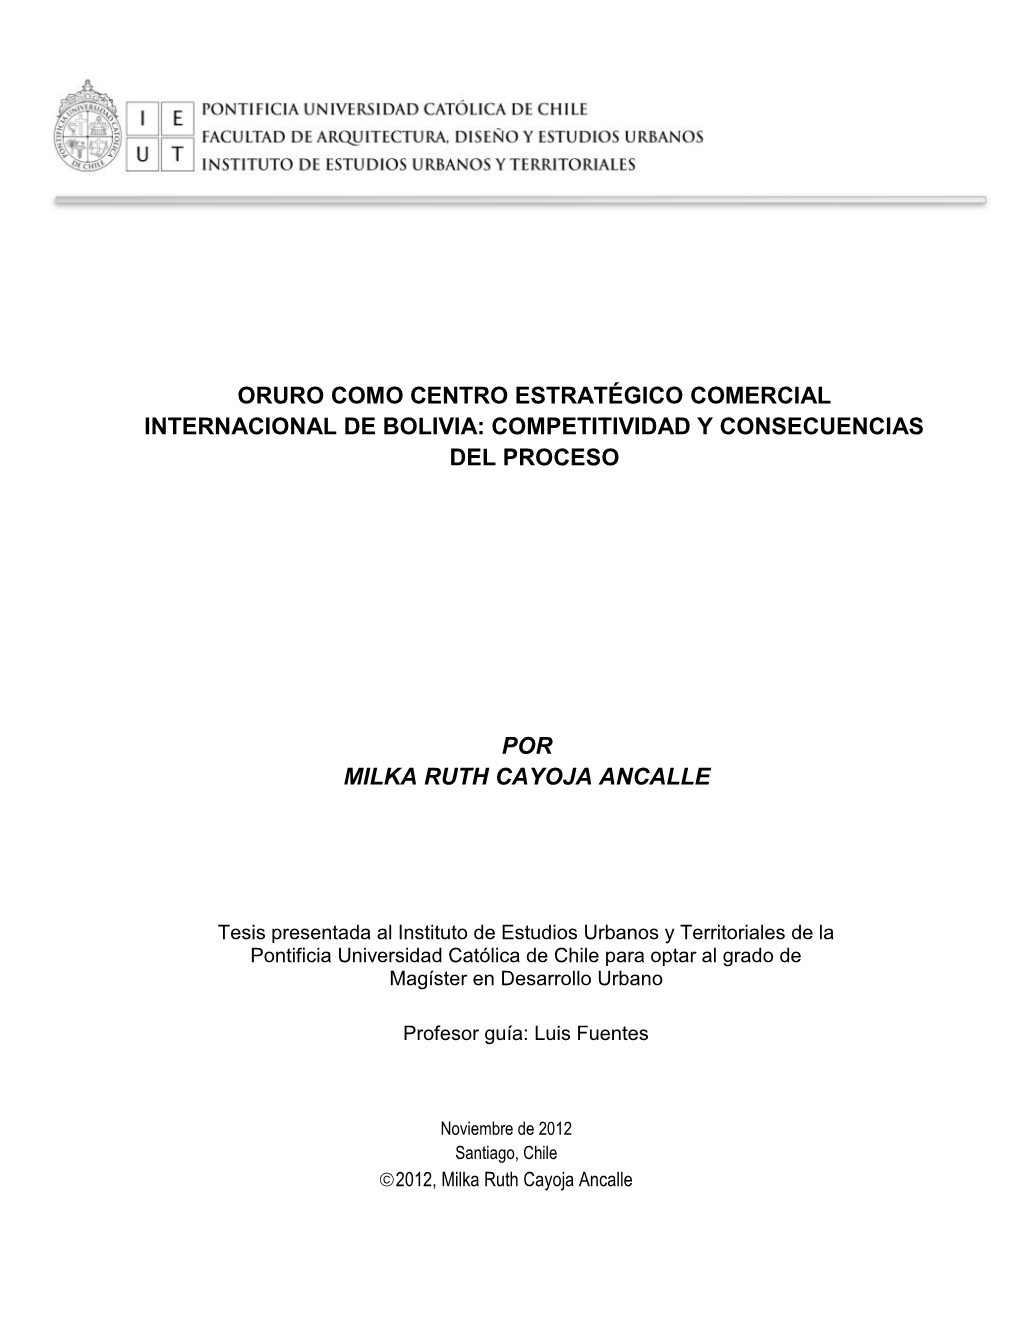 Oruro Como Centro Estratégico Comercial Internacional De Bolivia: Competitividad Y Consecuencias Del Proceso